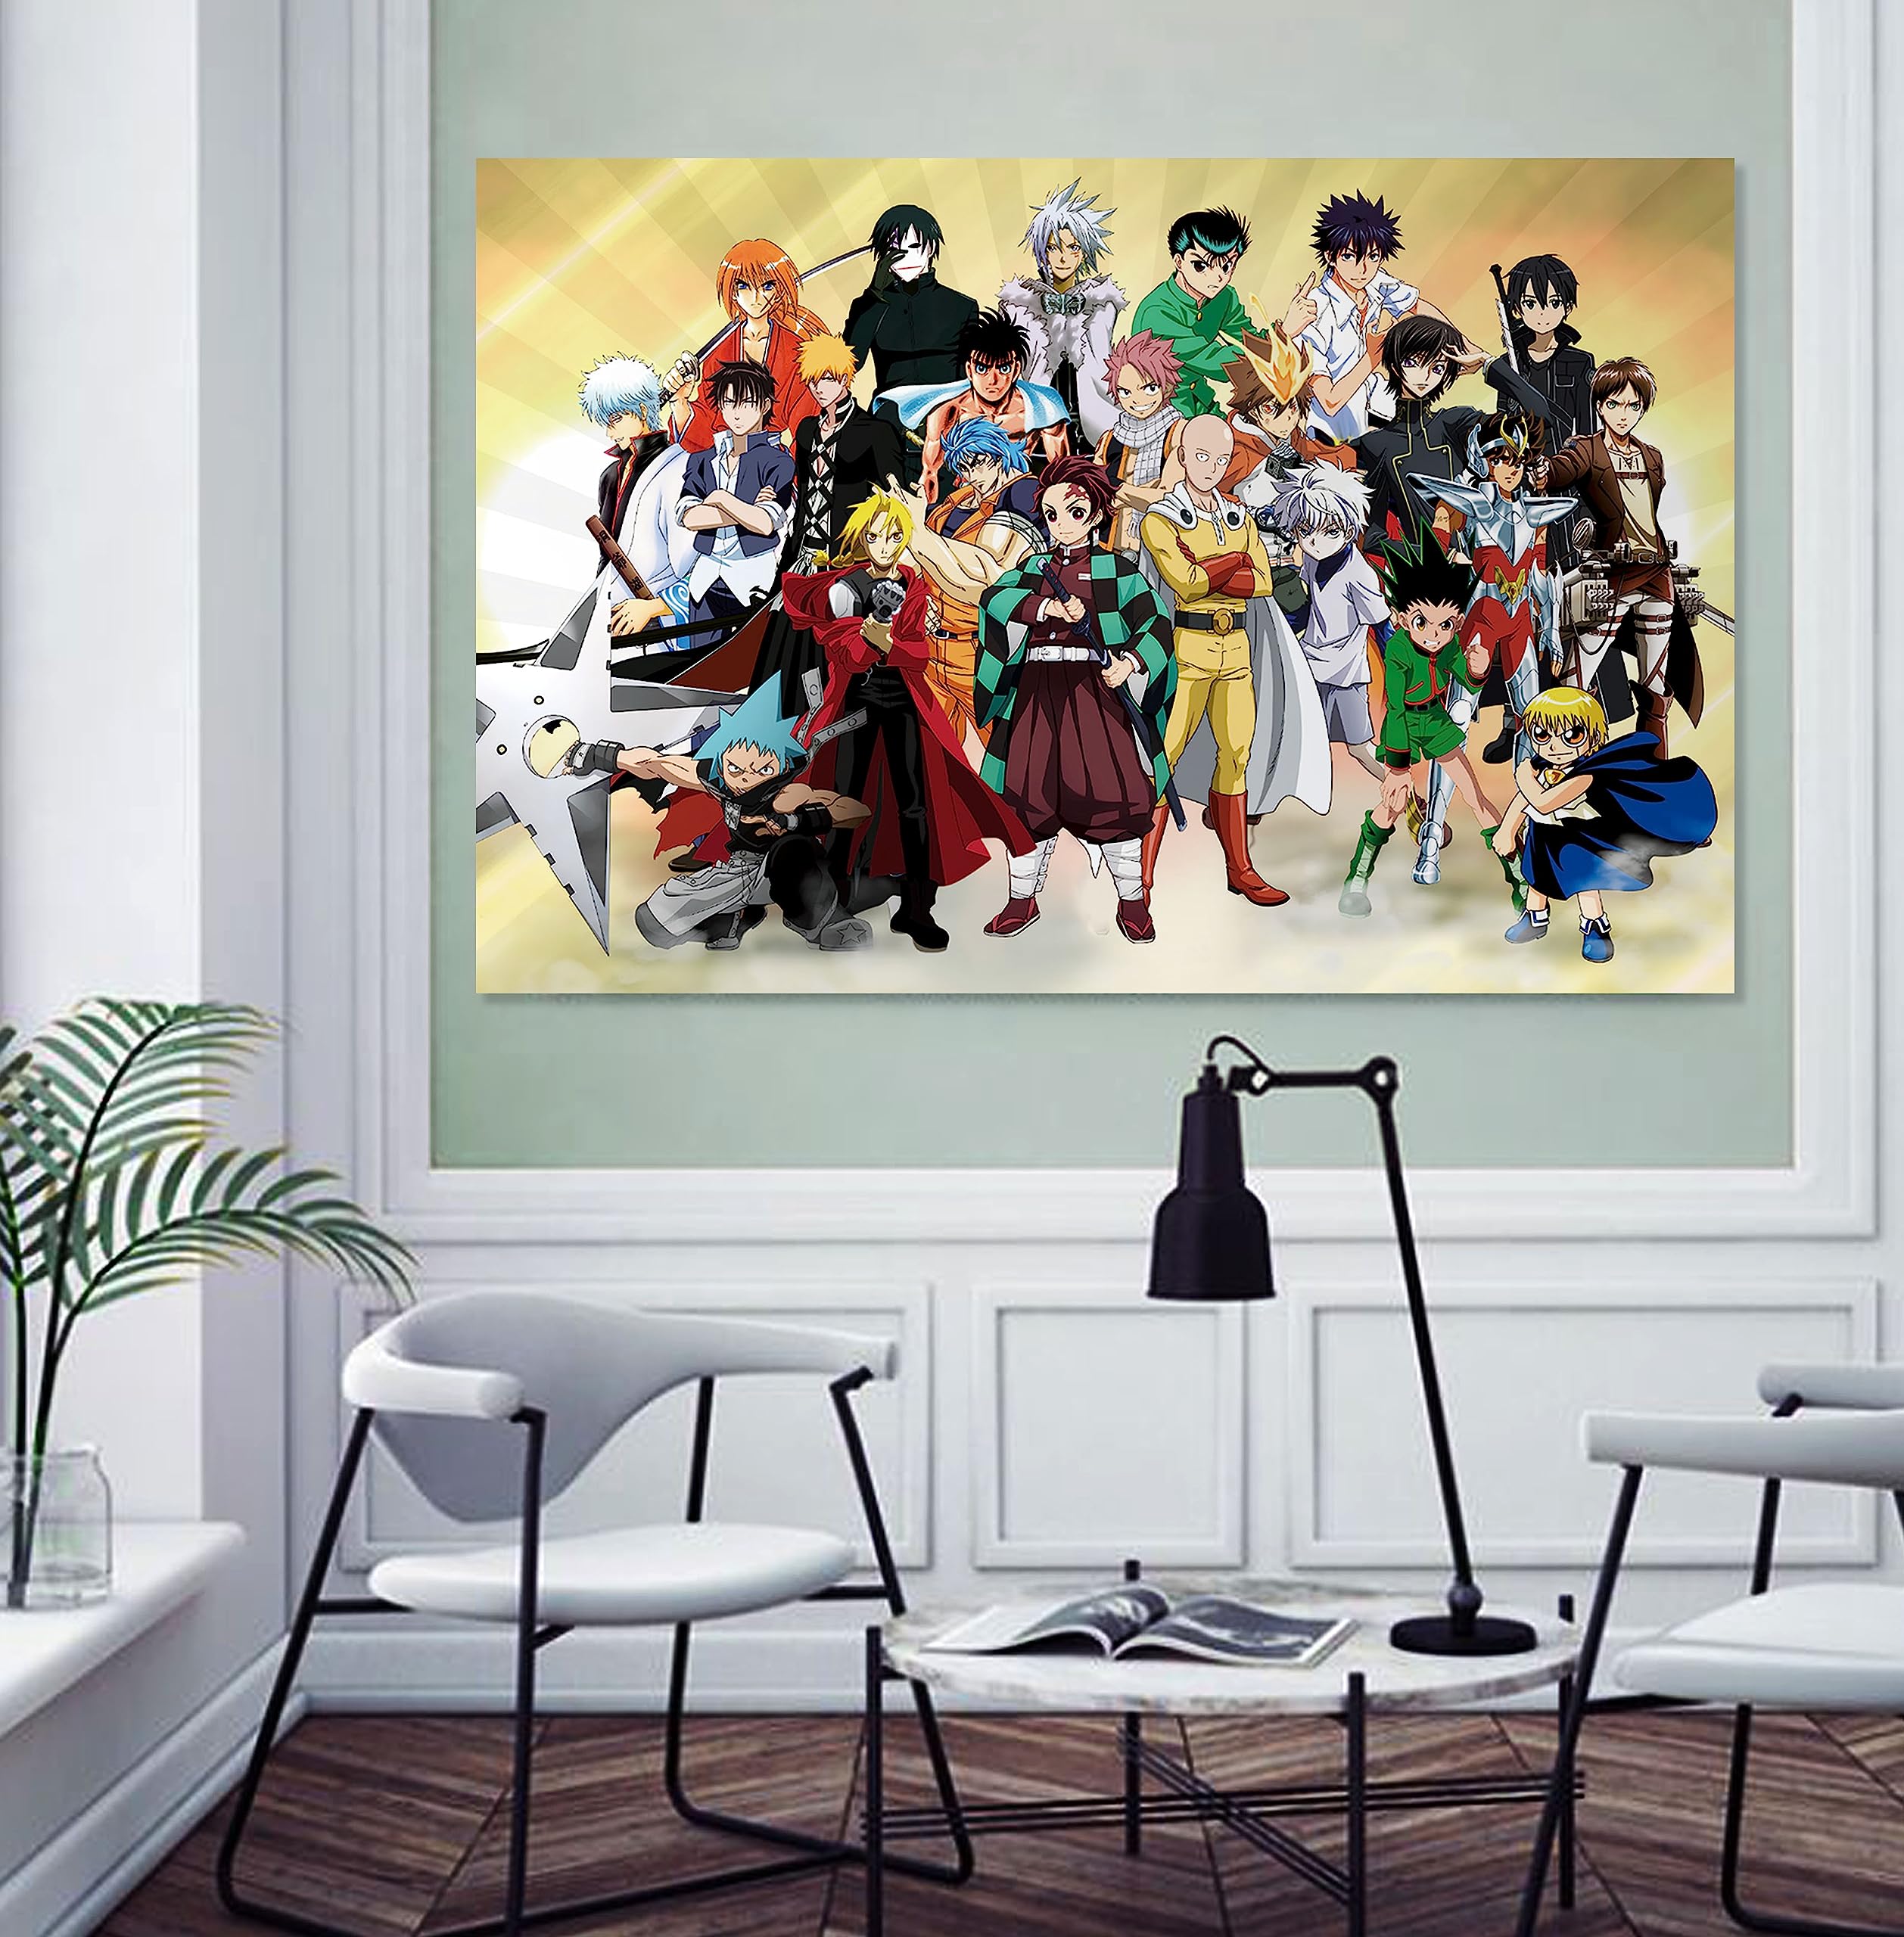 Mua Feyigy Anime Tapestry Room Decor Backdrop Cartoon Poster Wall ...